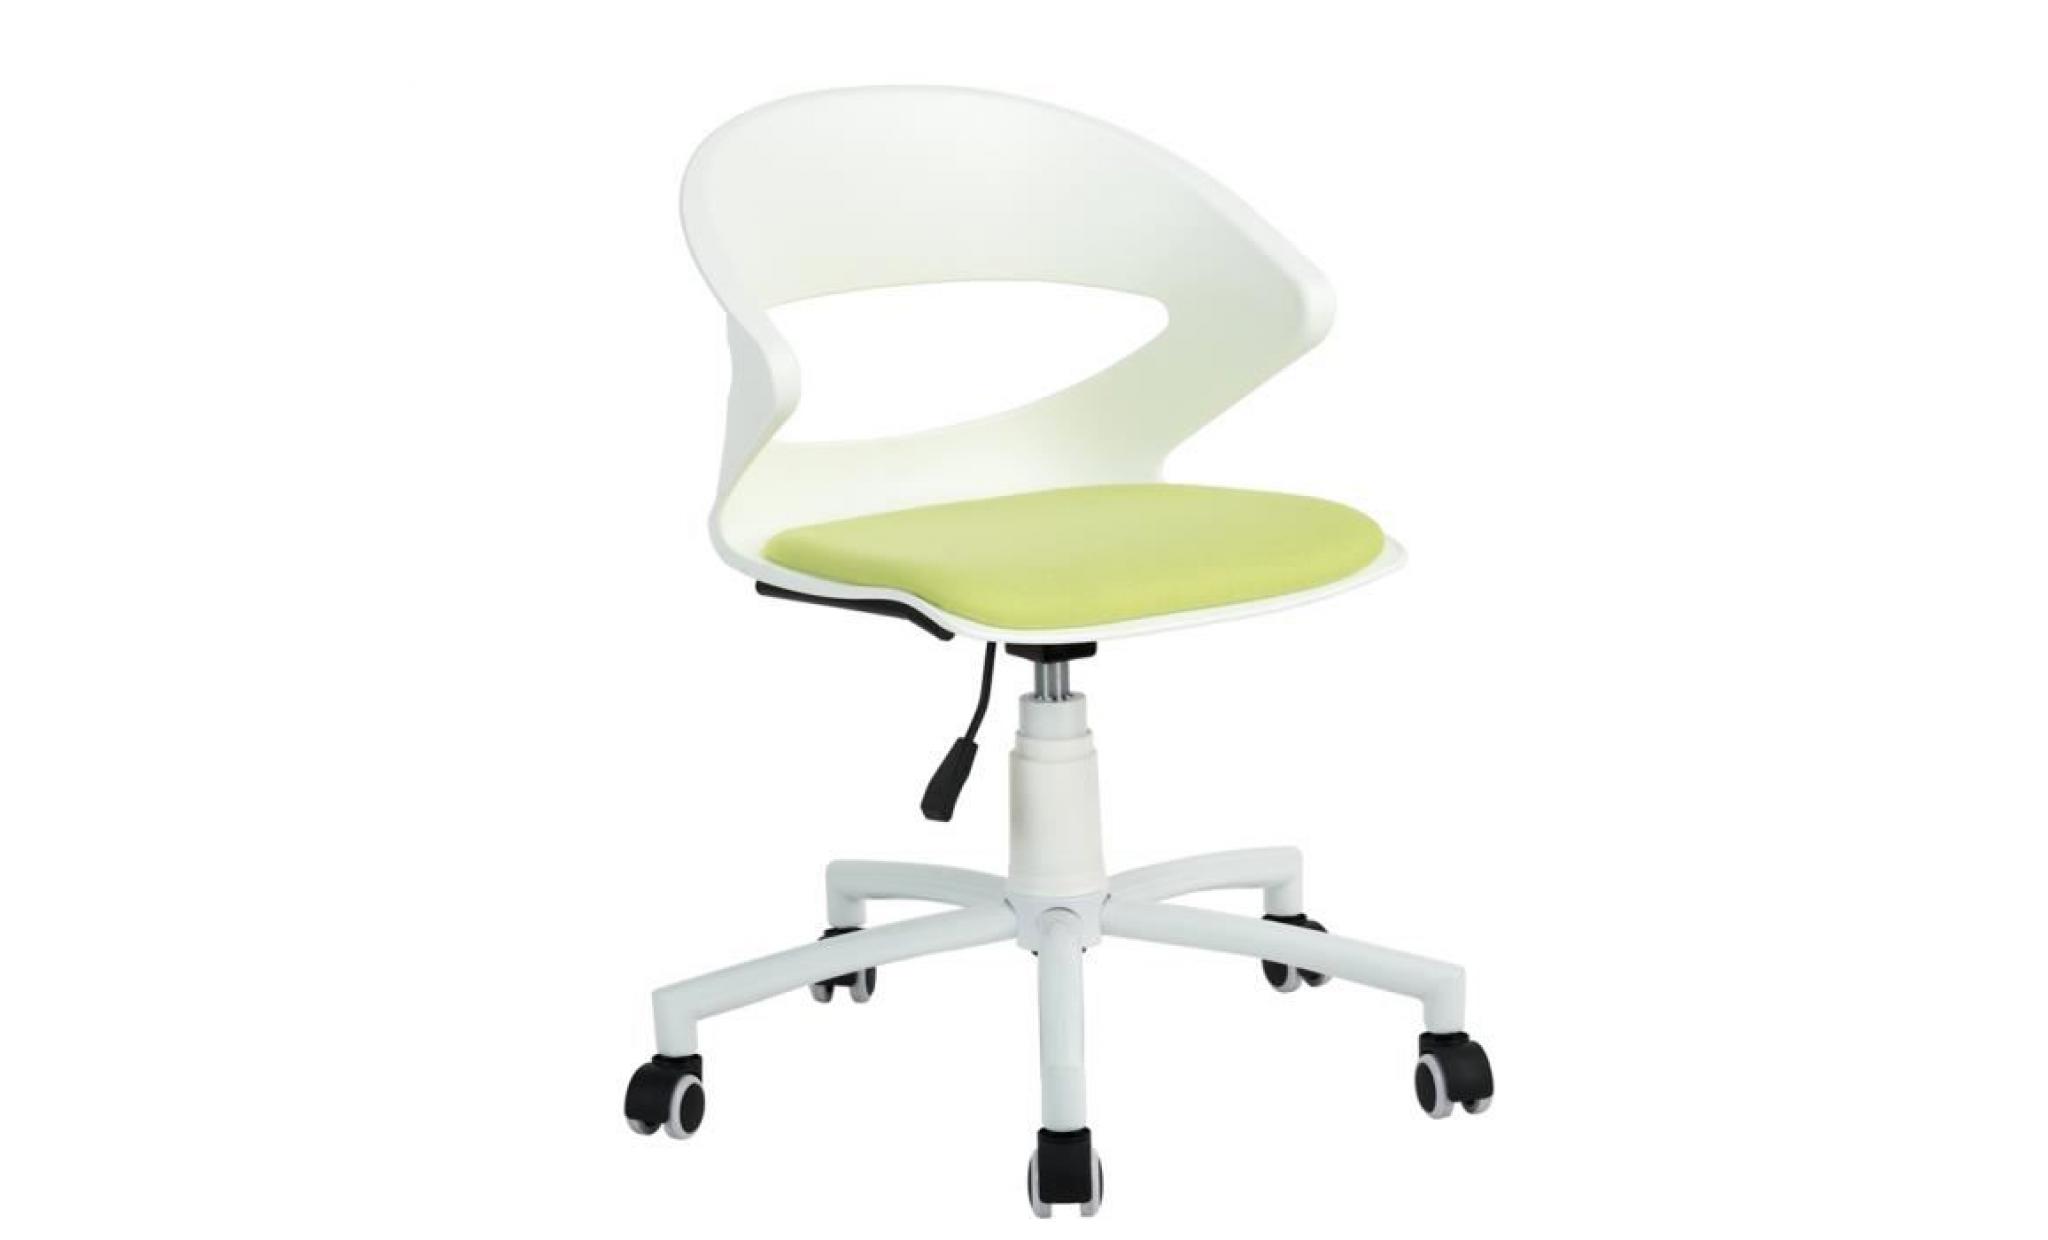 aingoo fauteuil de bureau chaise réglable sur roulettes plastique méétal vert anis blanc